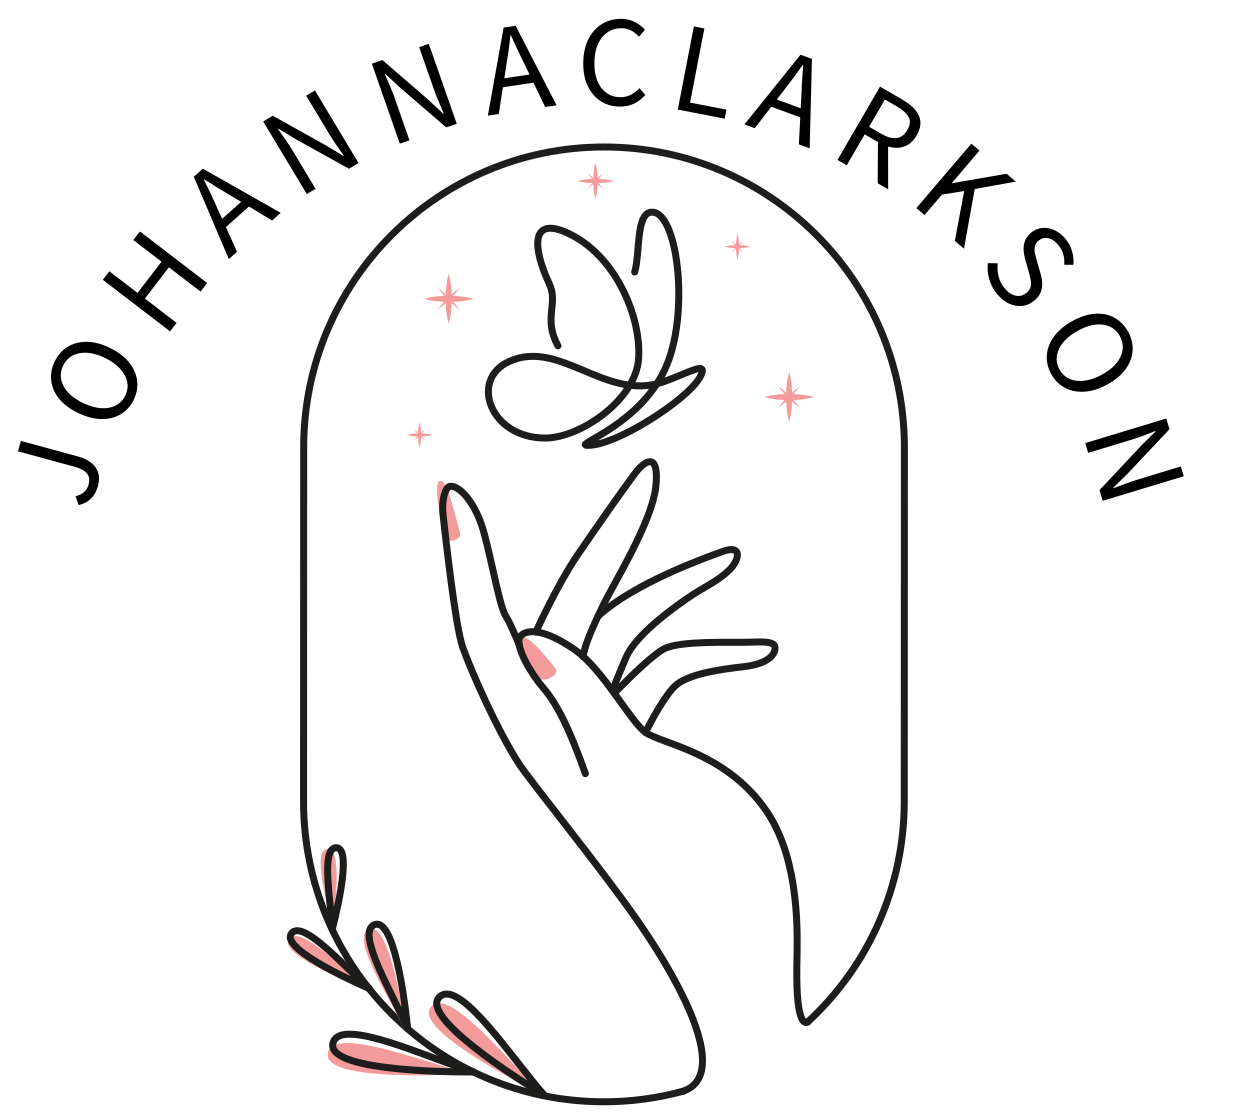 Johannaclarkson